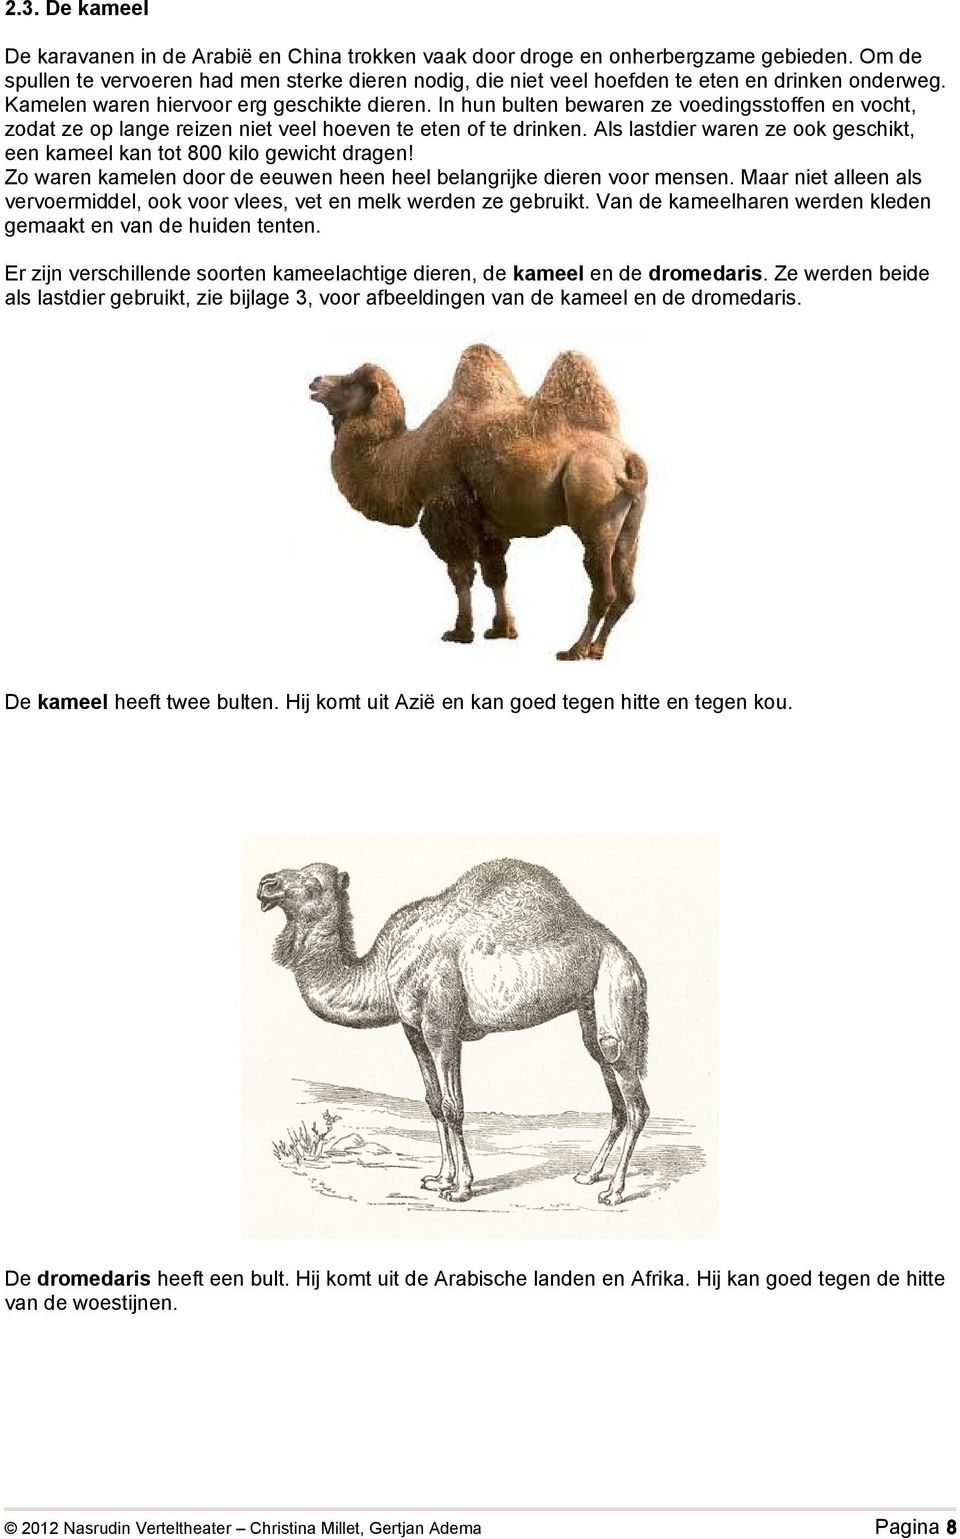 In hun bulten bewaren ze voedingsstoffen en vocht, zodat ze op lange reizen niet veel hoeven te eten of te drinken. Als lastdier waren ze ook geschikt, een kameel kan tot 800 kilo gewicht dragen!